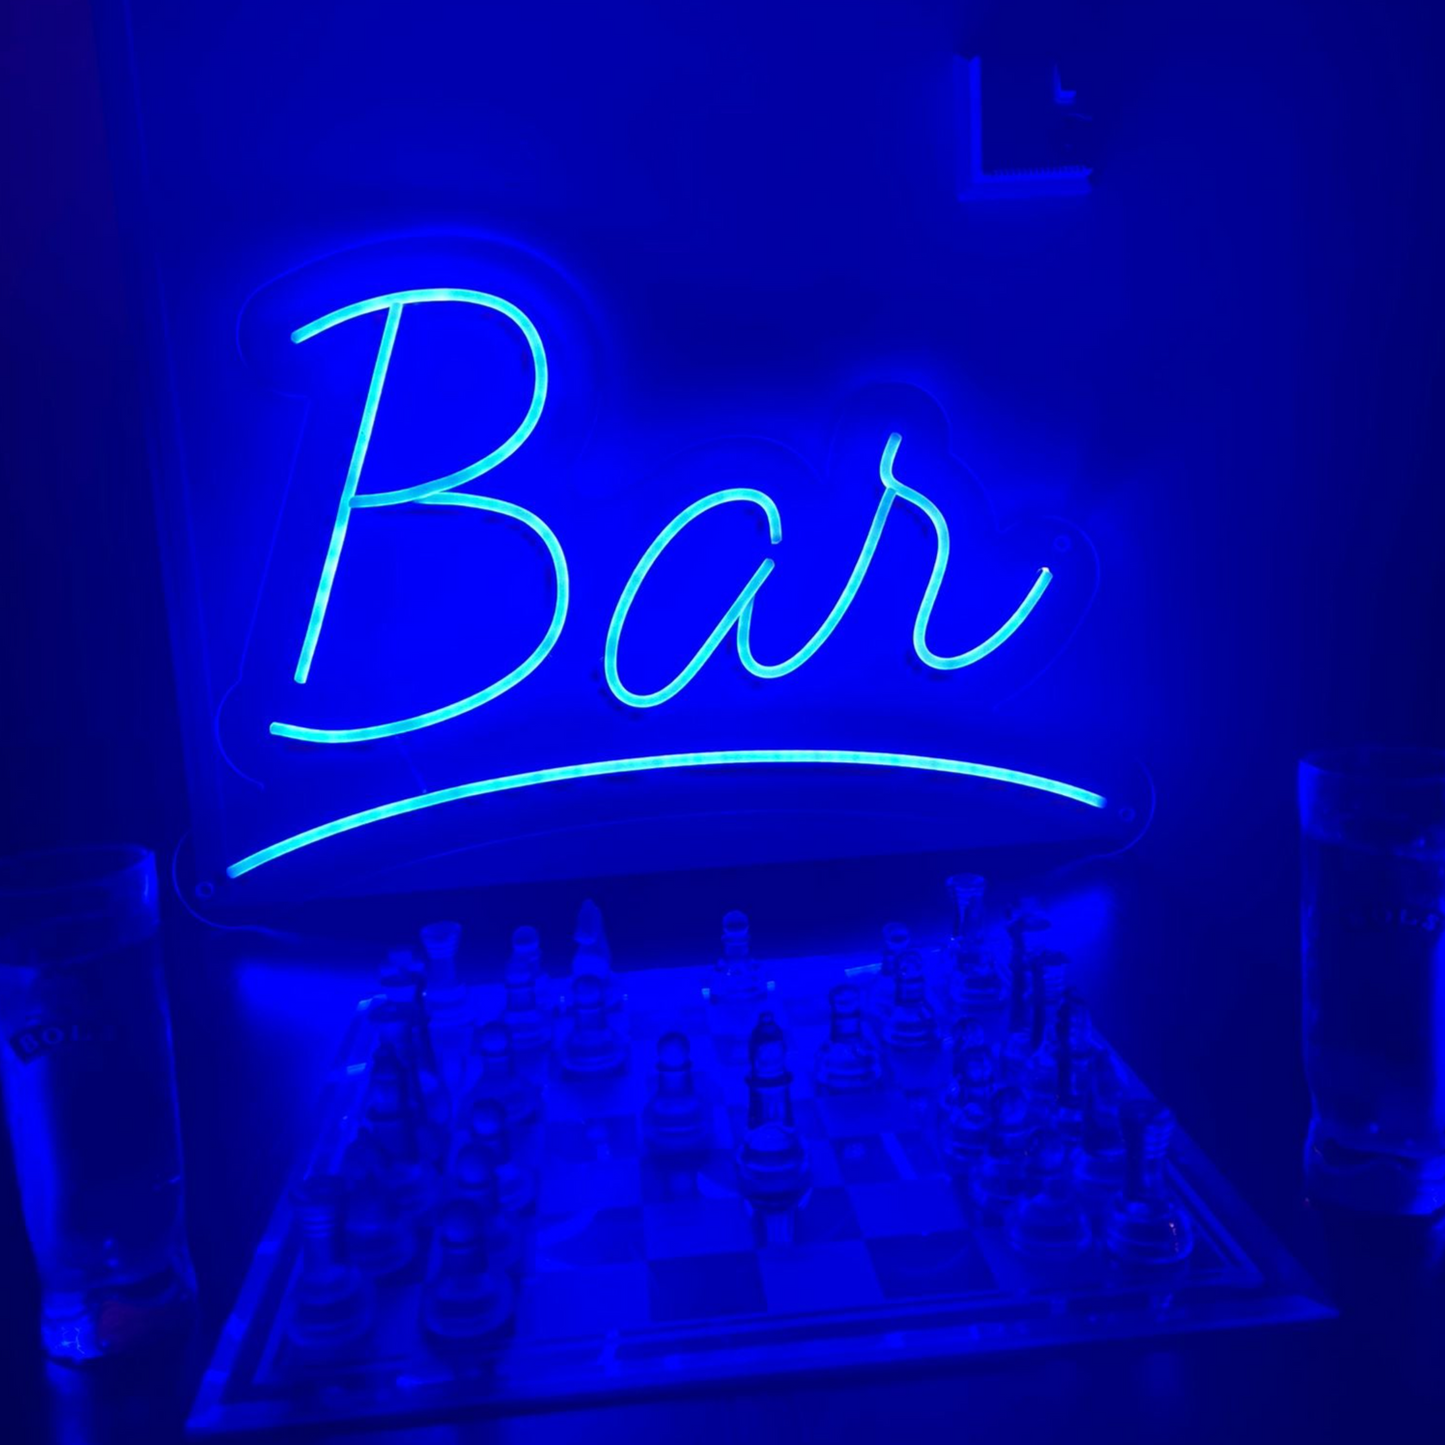 Bar neonový nápis